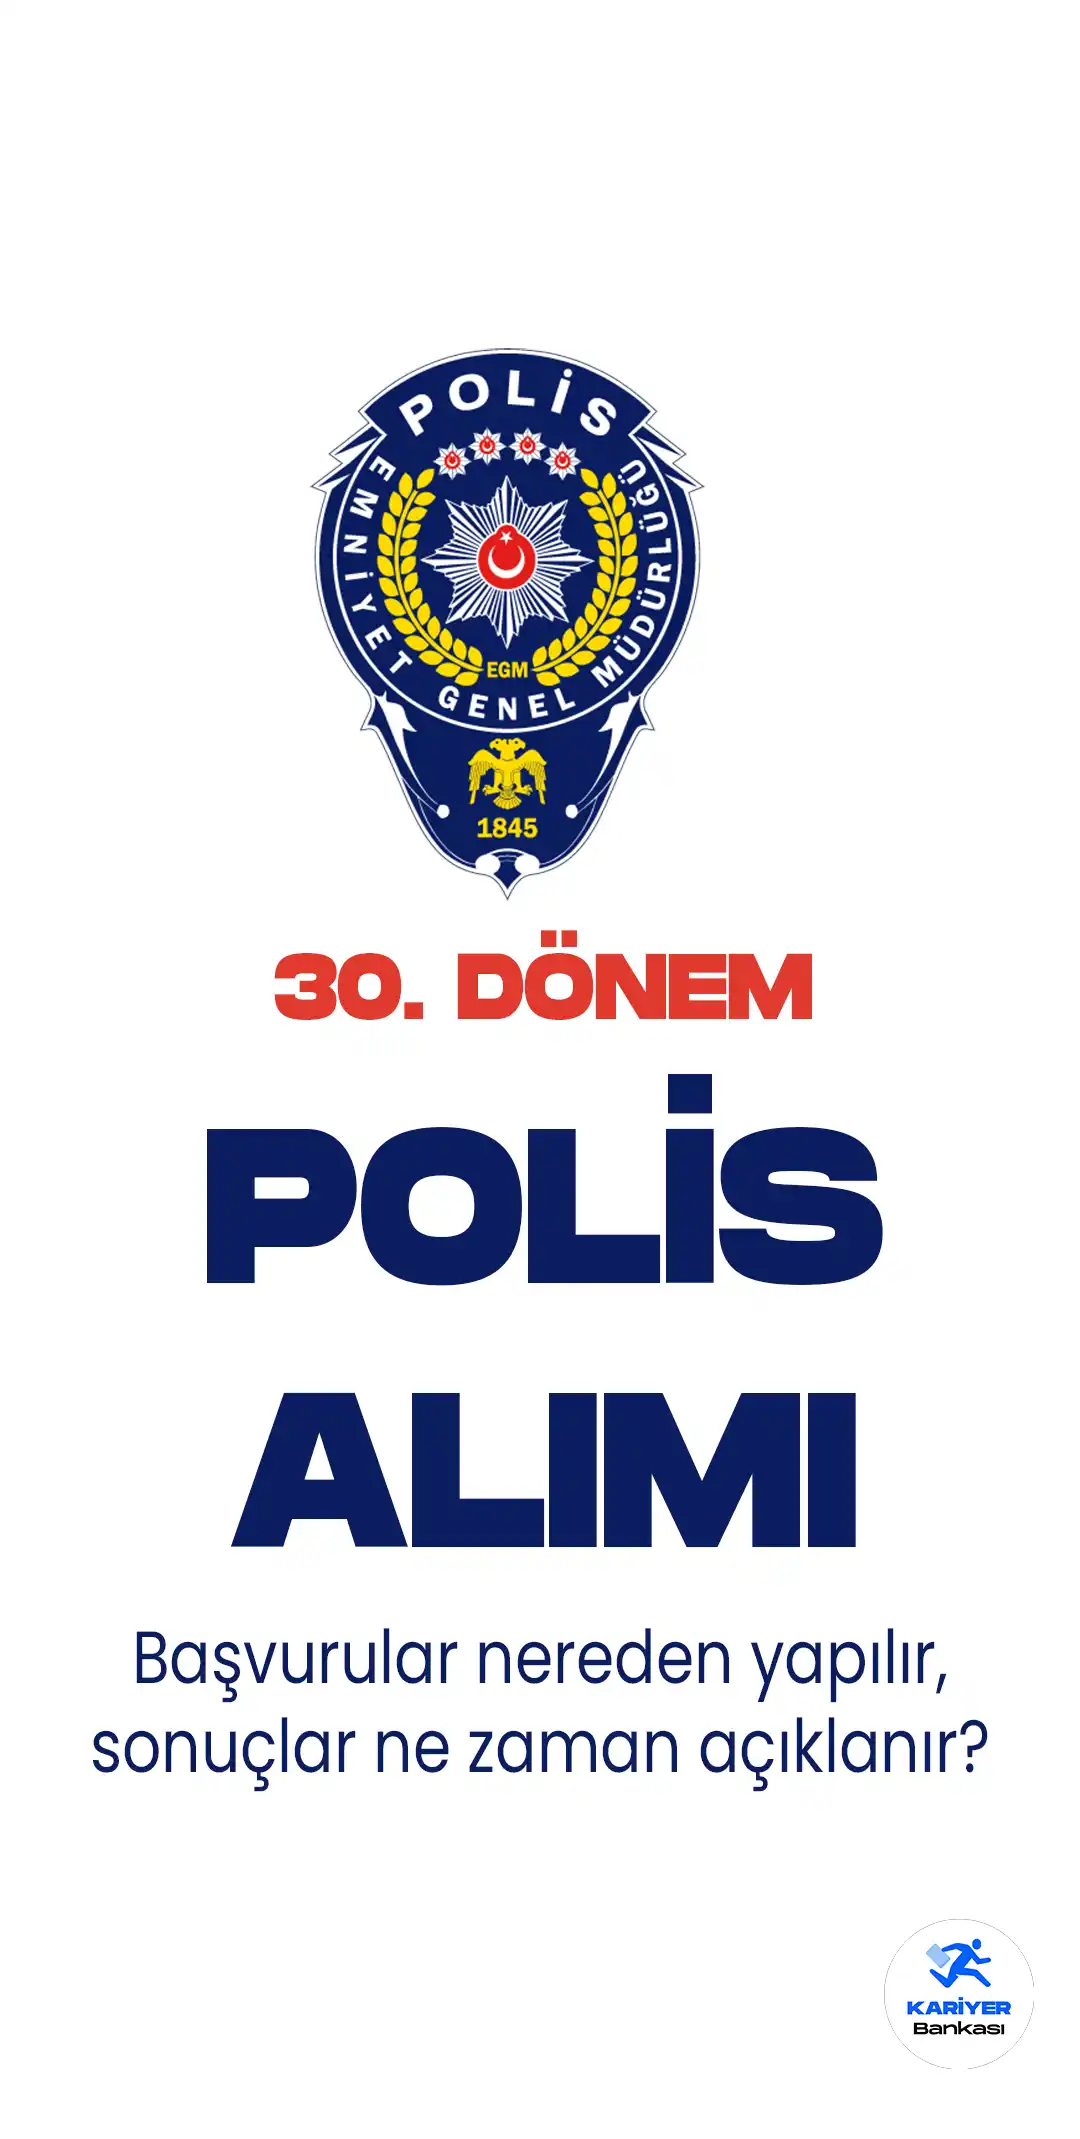 İçişleri Bakanlığı Emniyet Genel Müdürlüğü Polis Akademisi Başkanlığı 30.dönem POMEM 10 bin 600 polis alımı için başvurularda sona geliniyor.